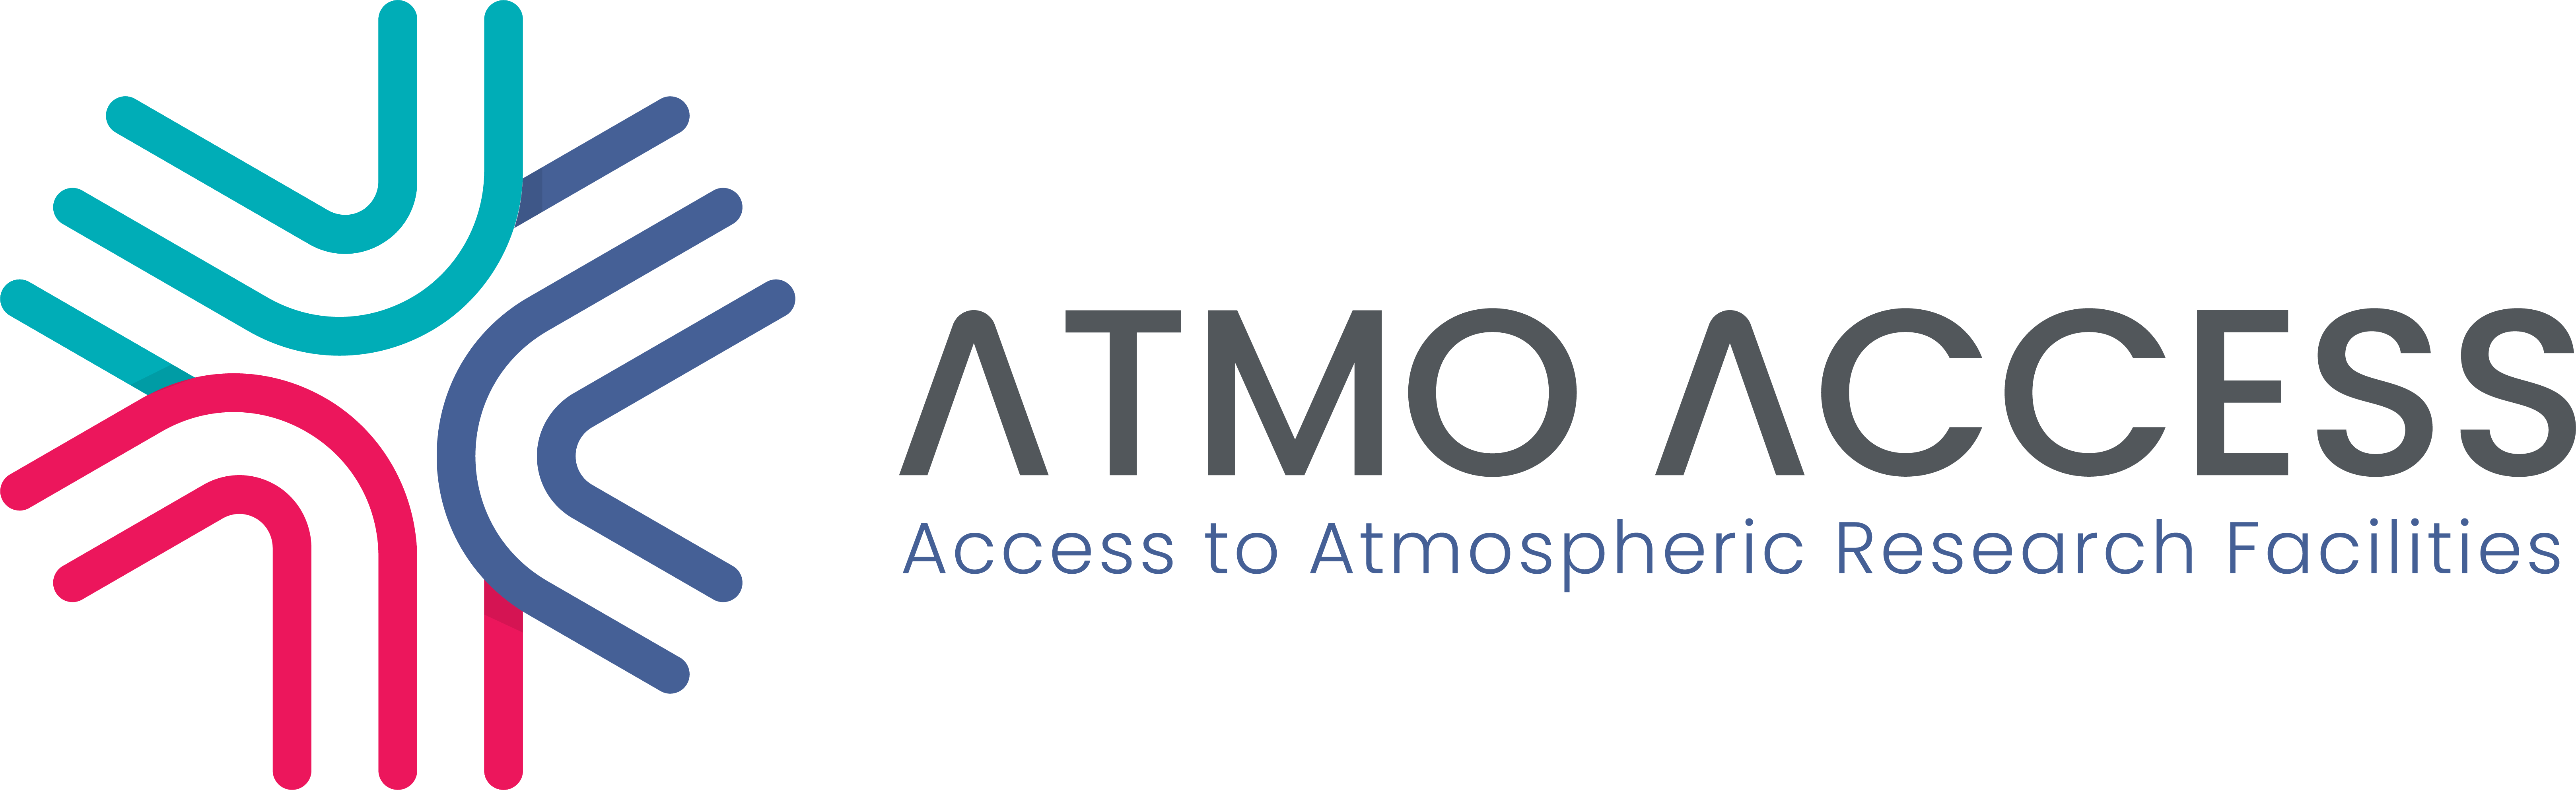 ATMO-ACCESS logo